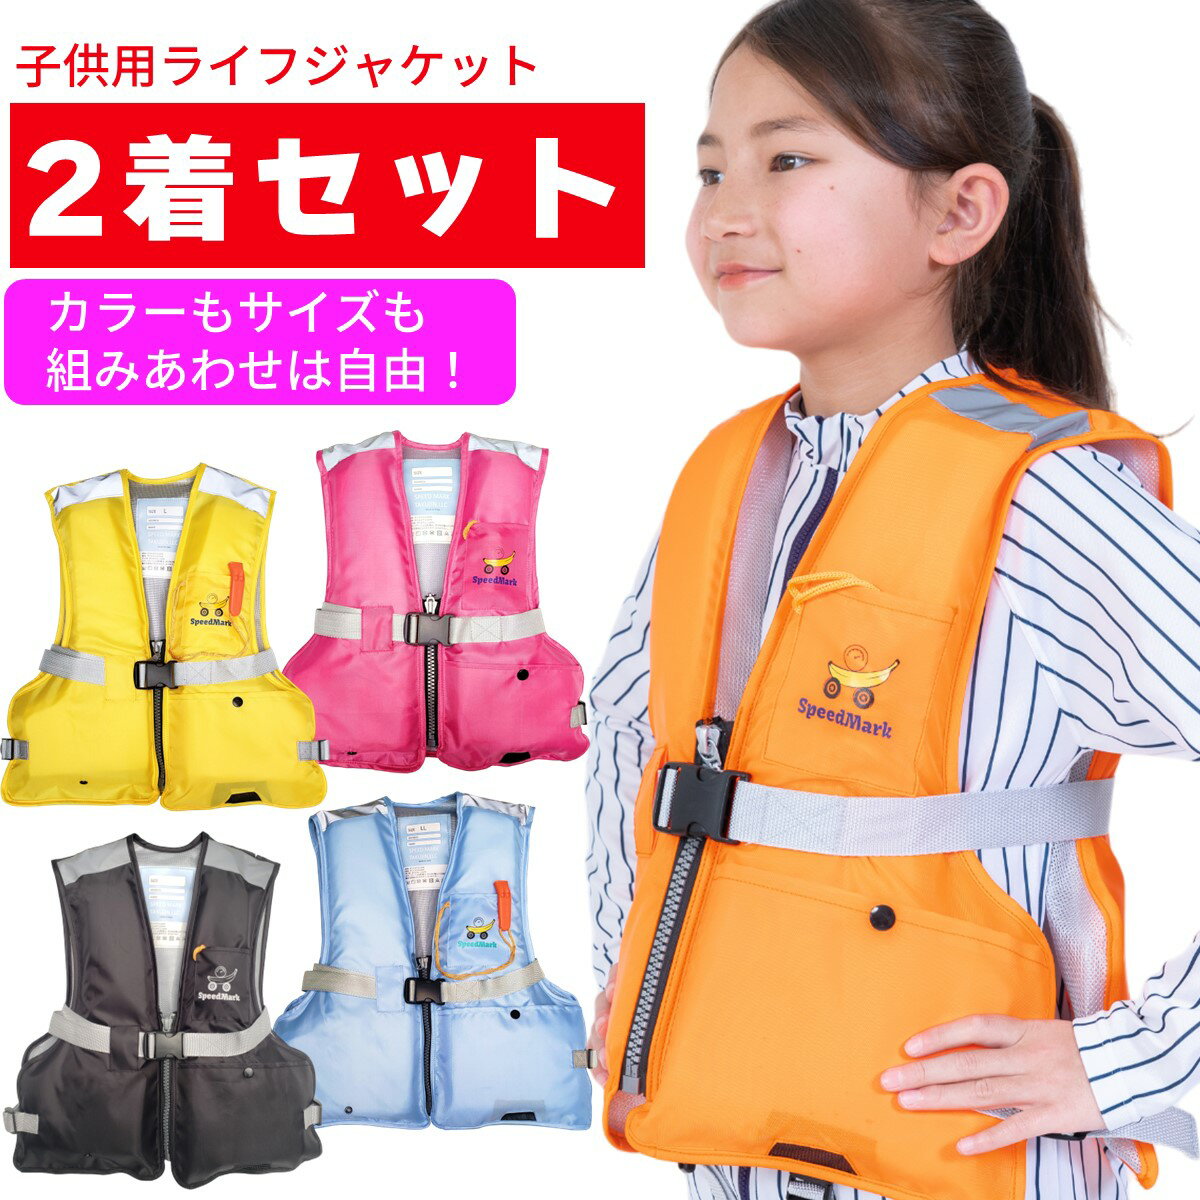 【 2着セット 】 ライフジャケット 子供 子供...の商品画像